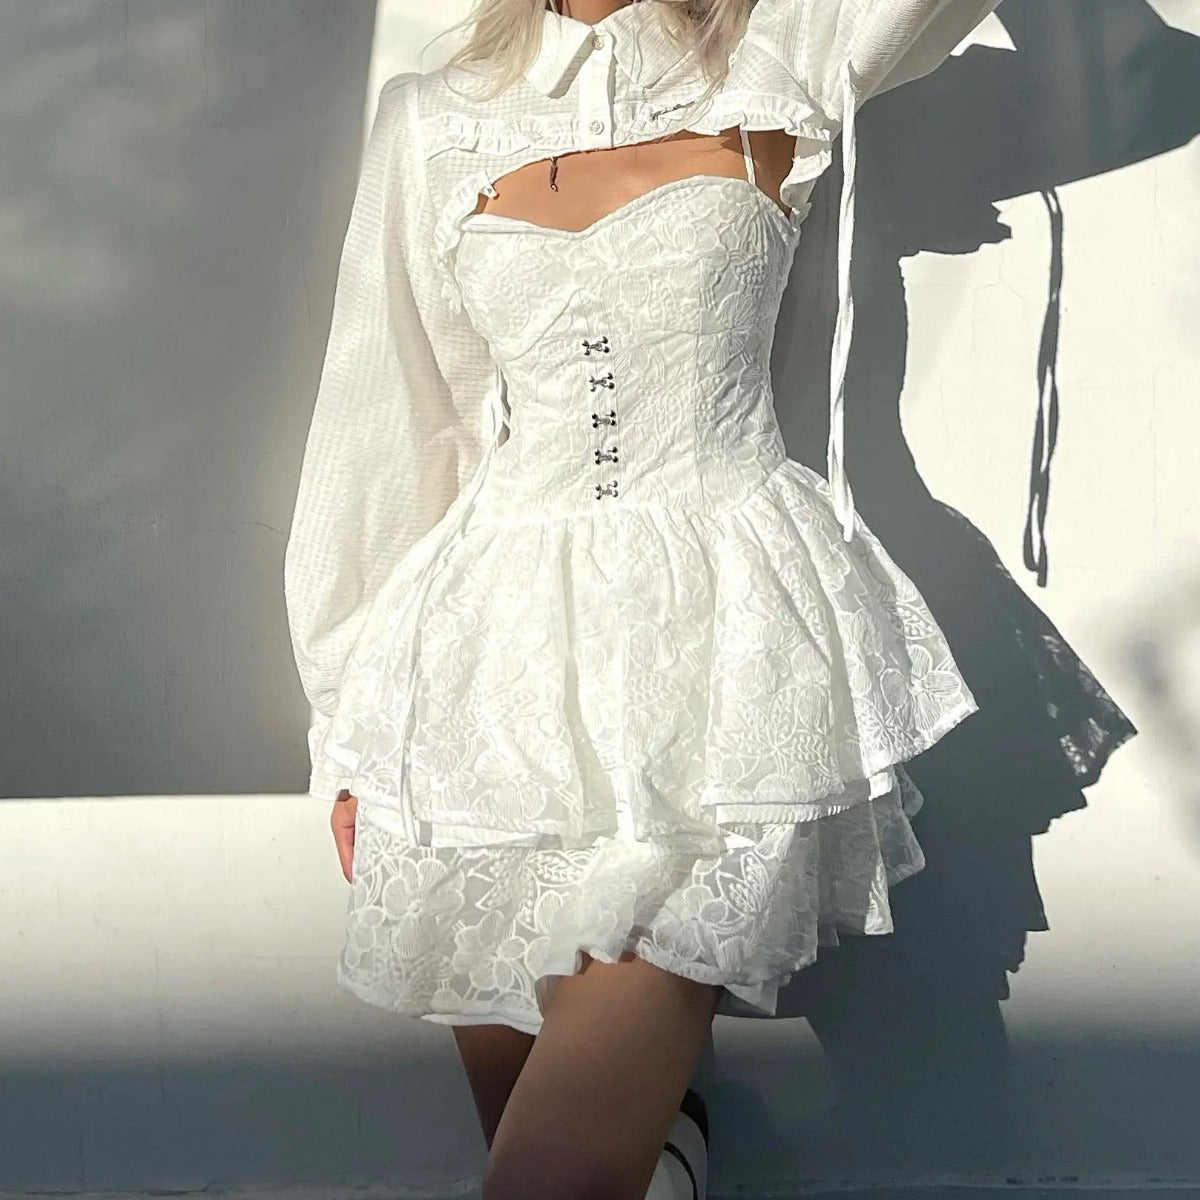 Hot Girl's Waist-Cinching White Suspender Lace Skirt + Blouse Set